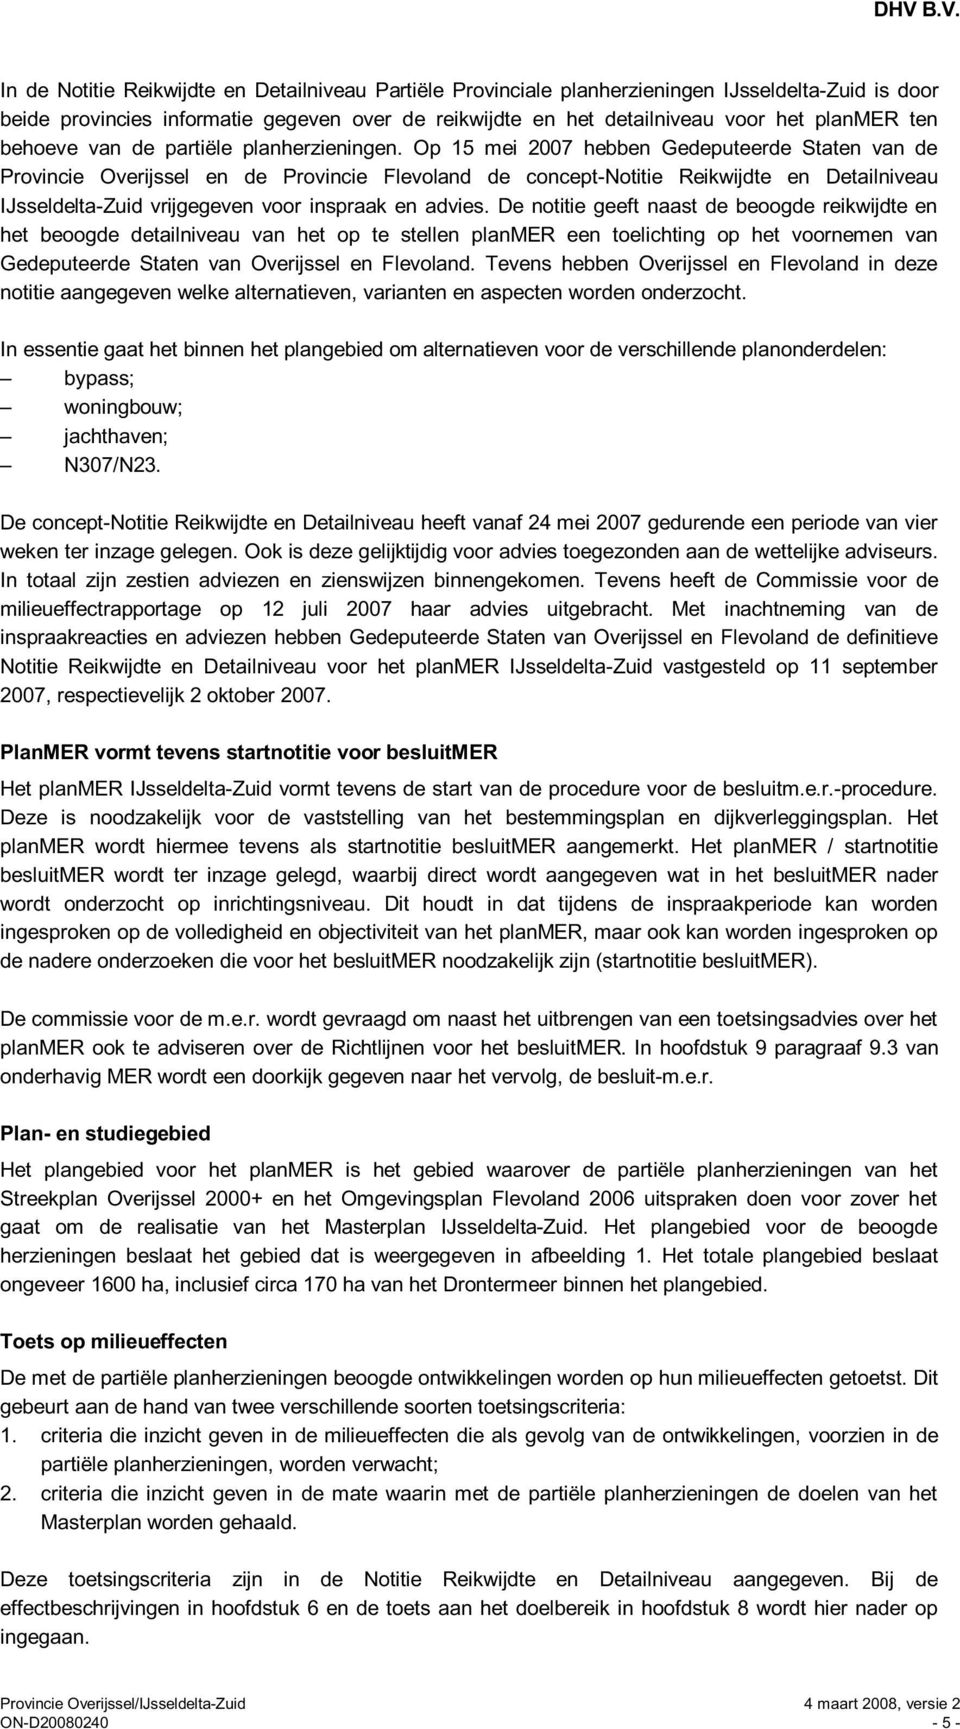 Op 15 mei 2007 hebben Gedeputeerde Staten van de Provincie Overijssel en de Provincie Flevoland de concept-notitie Reikwijdte en Detailniveau IJsseldelta-Zuid vrijgegeven voor inspraak en advies.